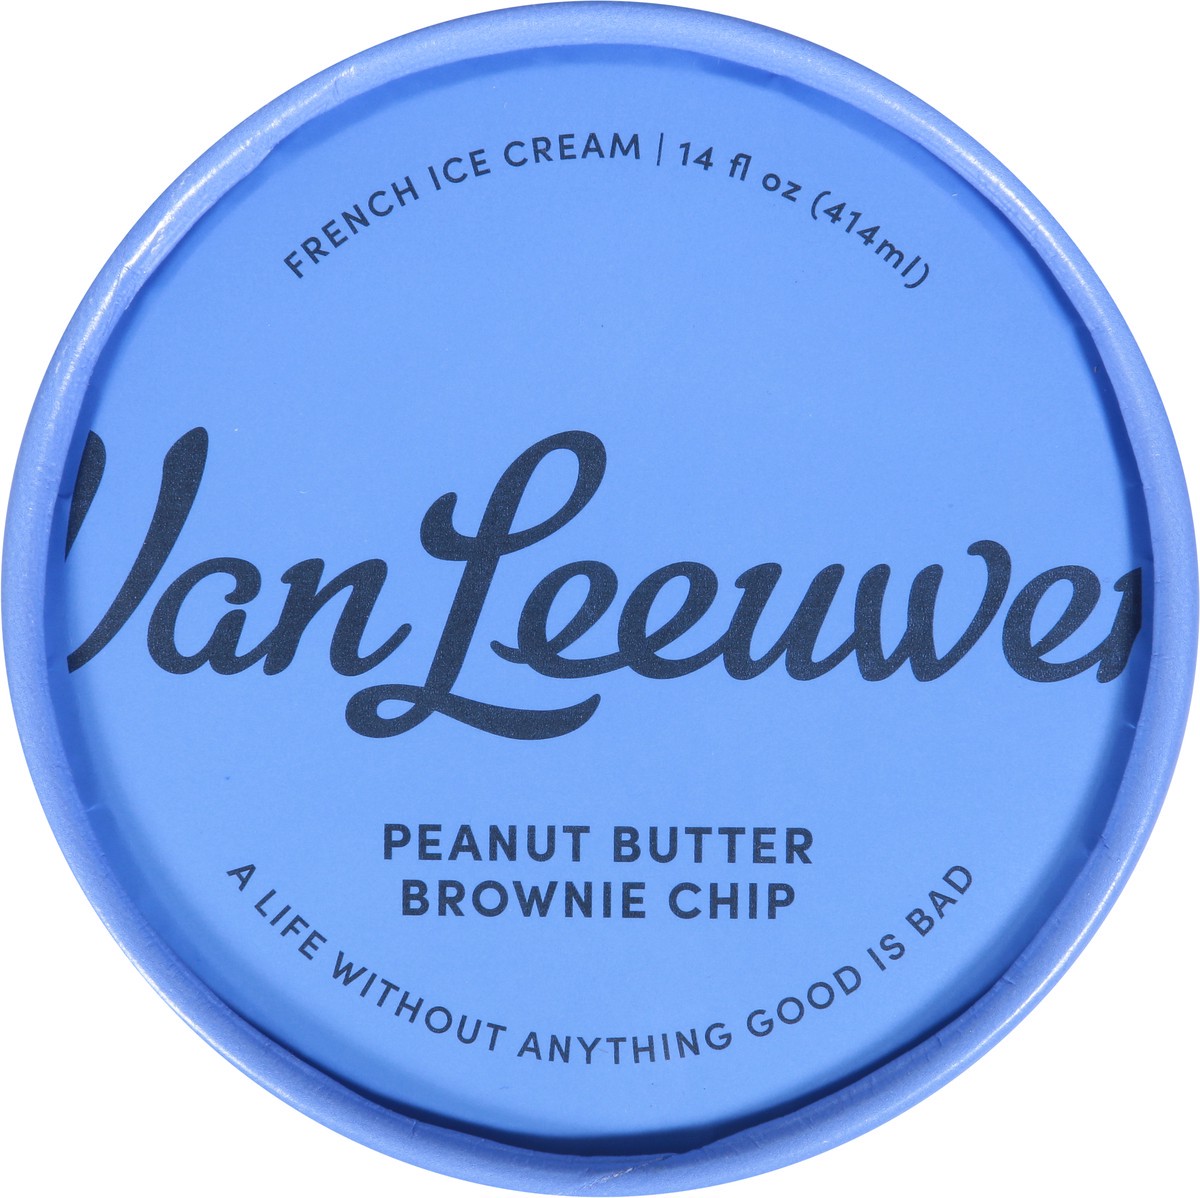 slide 9 of 9, Van Leeuwen Peanut Butter Brown Chip French Ice Cream 14 fl oz, 14 oz